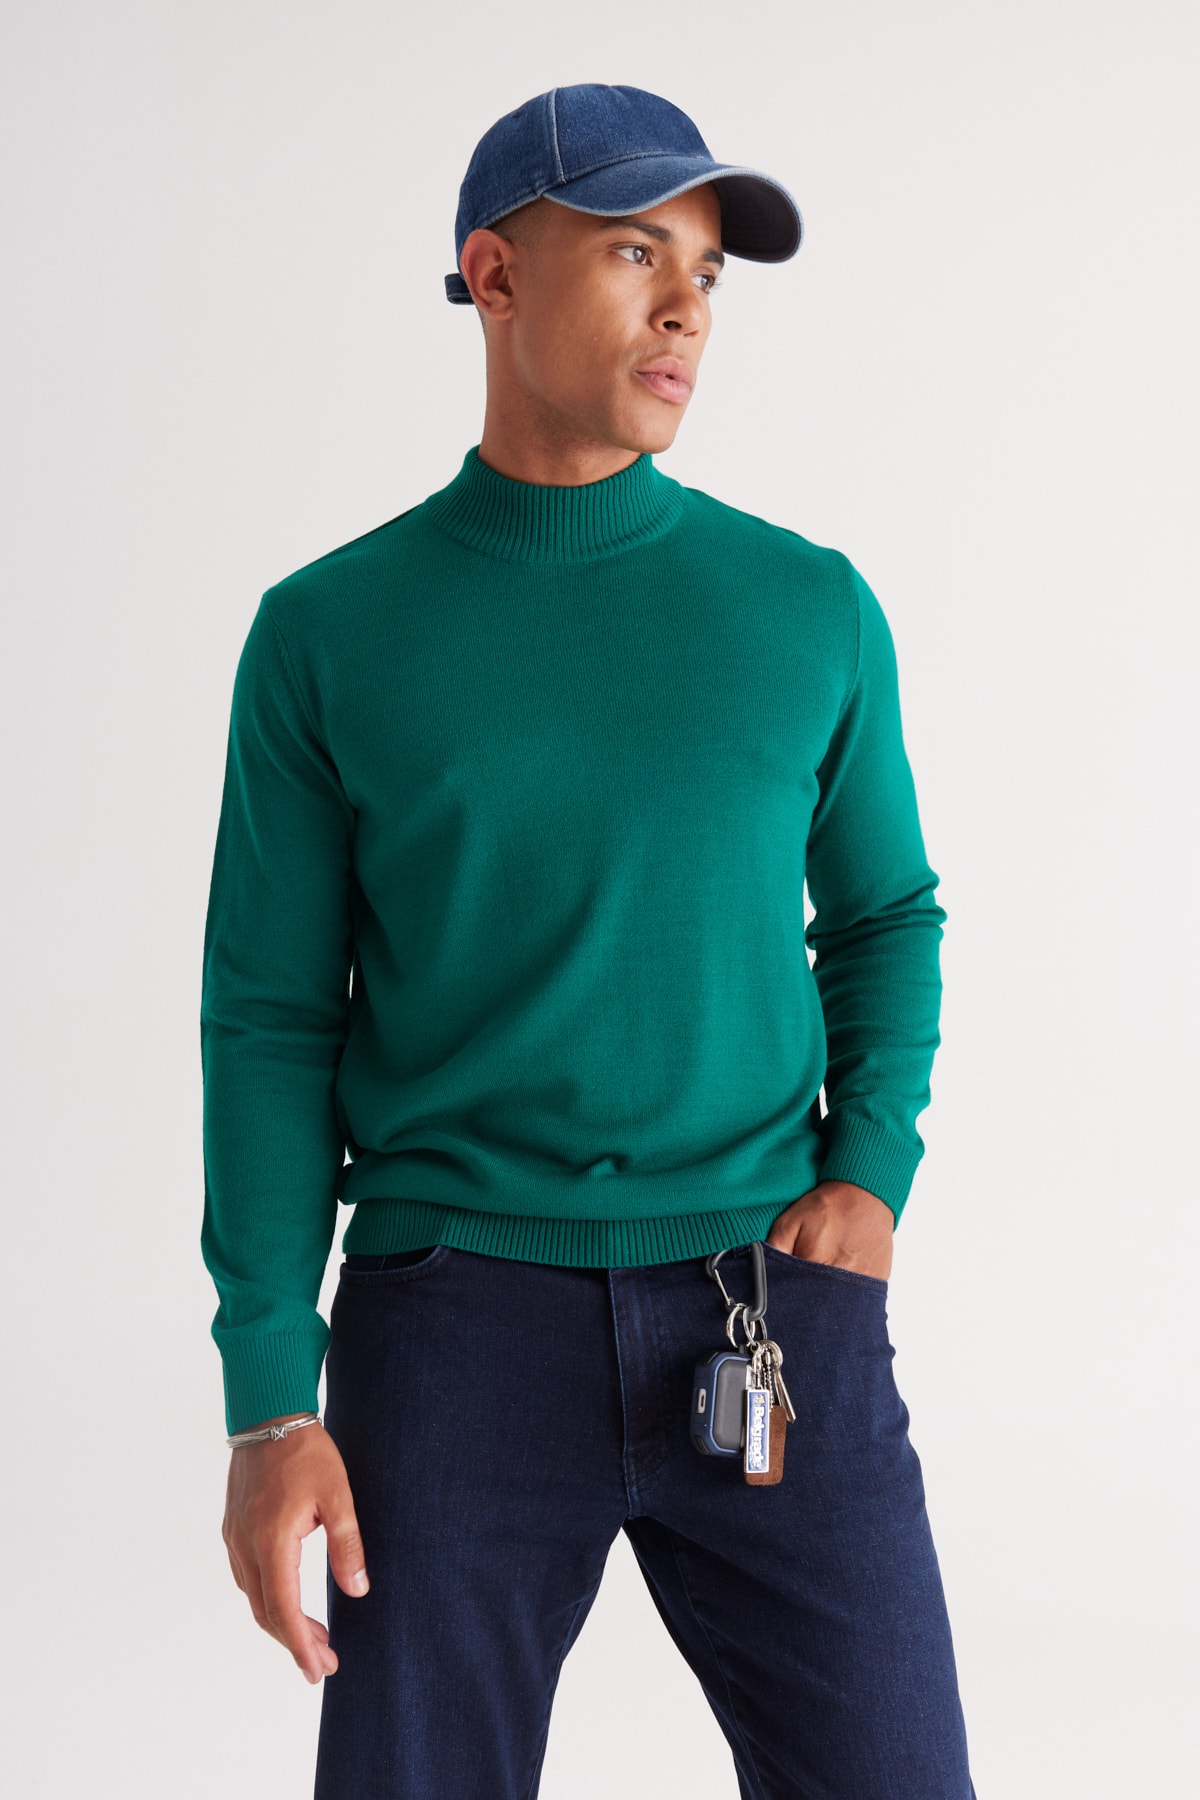 ALTINYILDIZ CLASSICS Men's Dark Green Anti-Pilling Standard Fit Regular Fit Half Turtleneck Knitwear Sweater